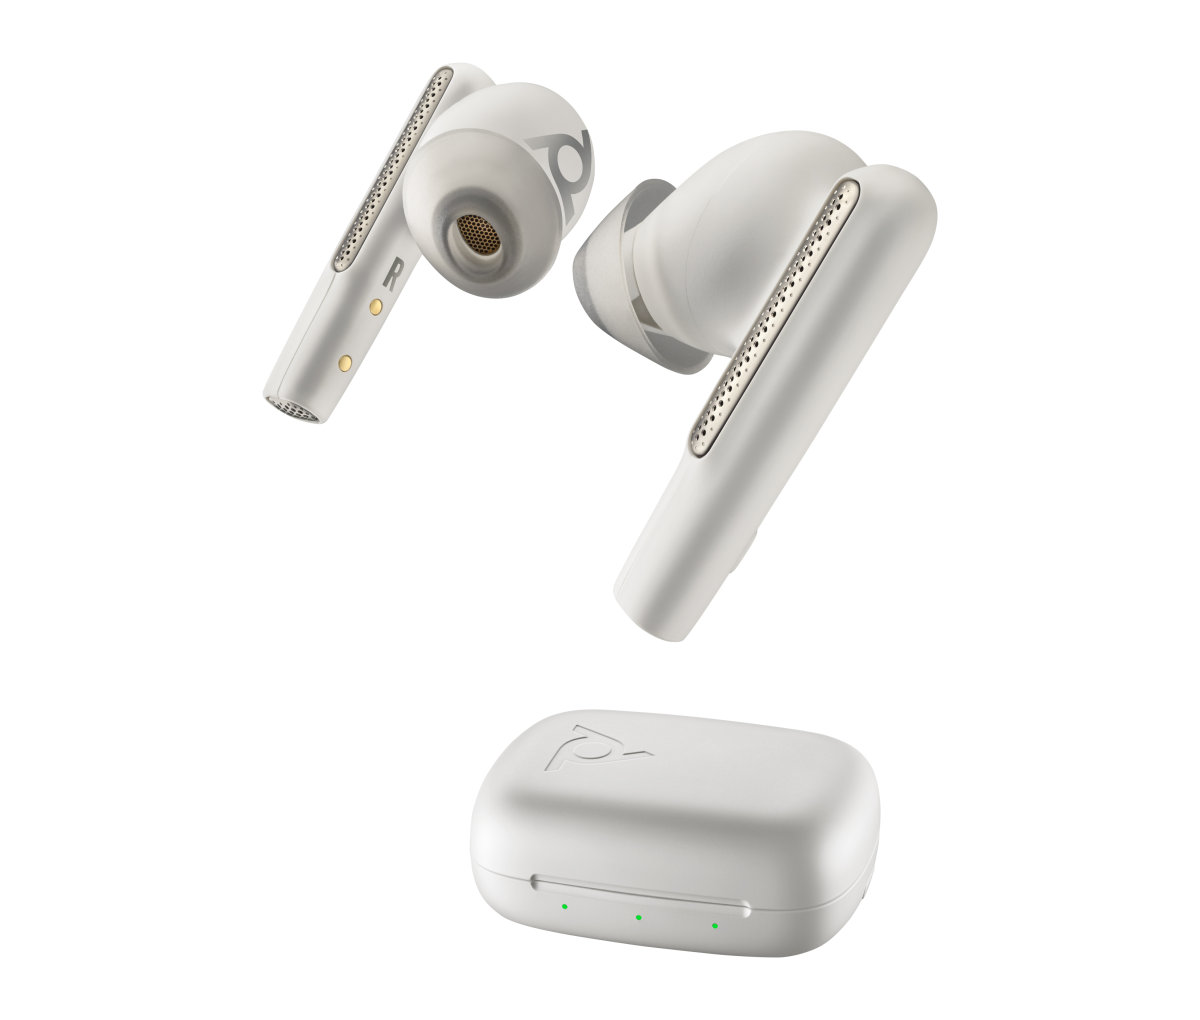 Bluetooth sluchátka Poly Voyager Free 60 White Sand + BT700 USB-C (7Y8L4AA)